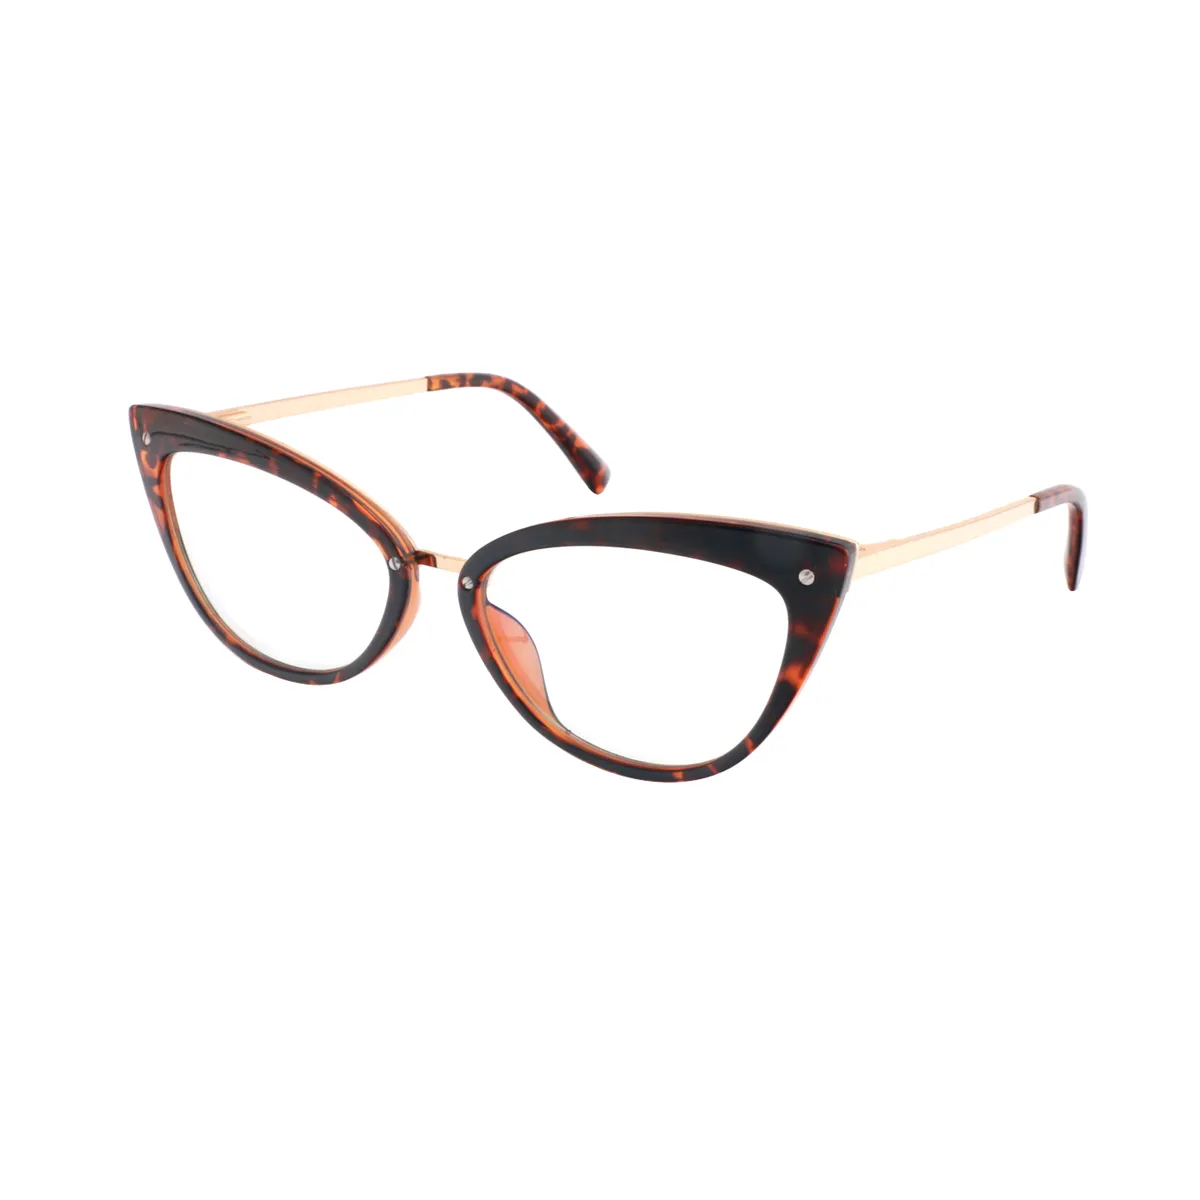 Flossie - Cat-eye Tortoiseshell Glasses for Women - EFE